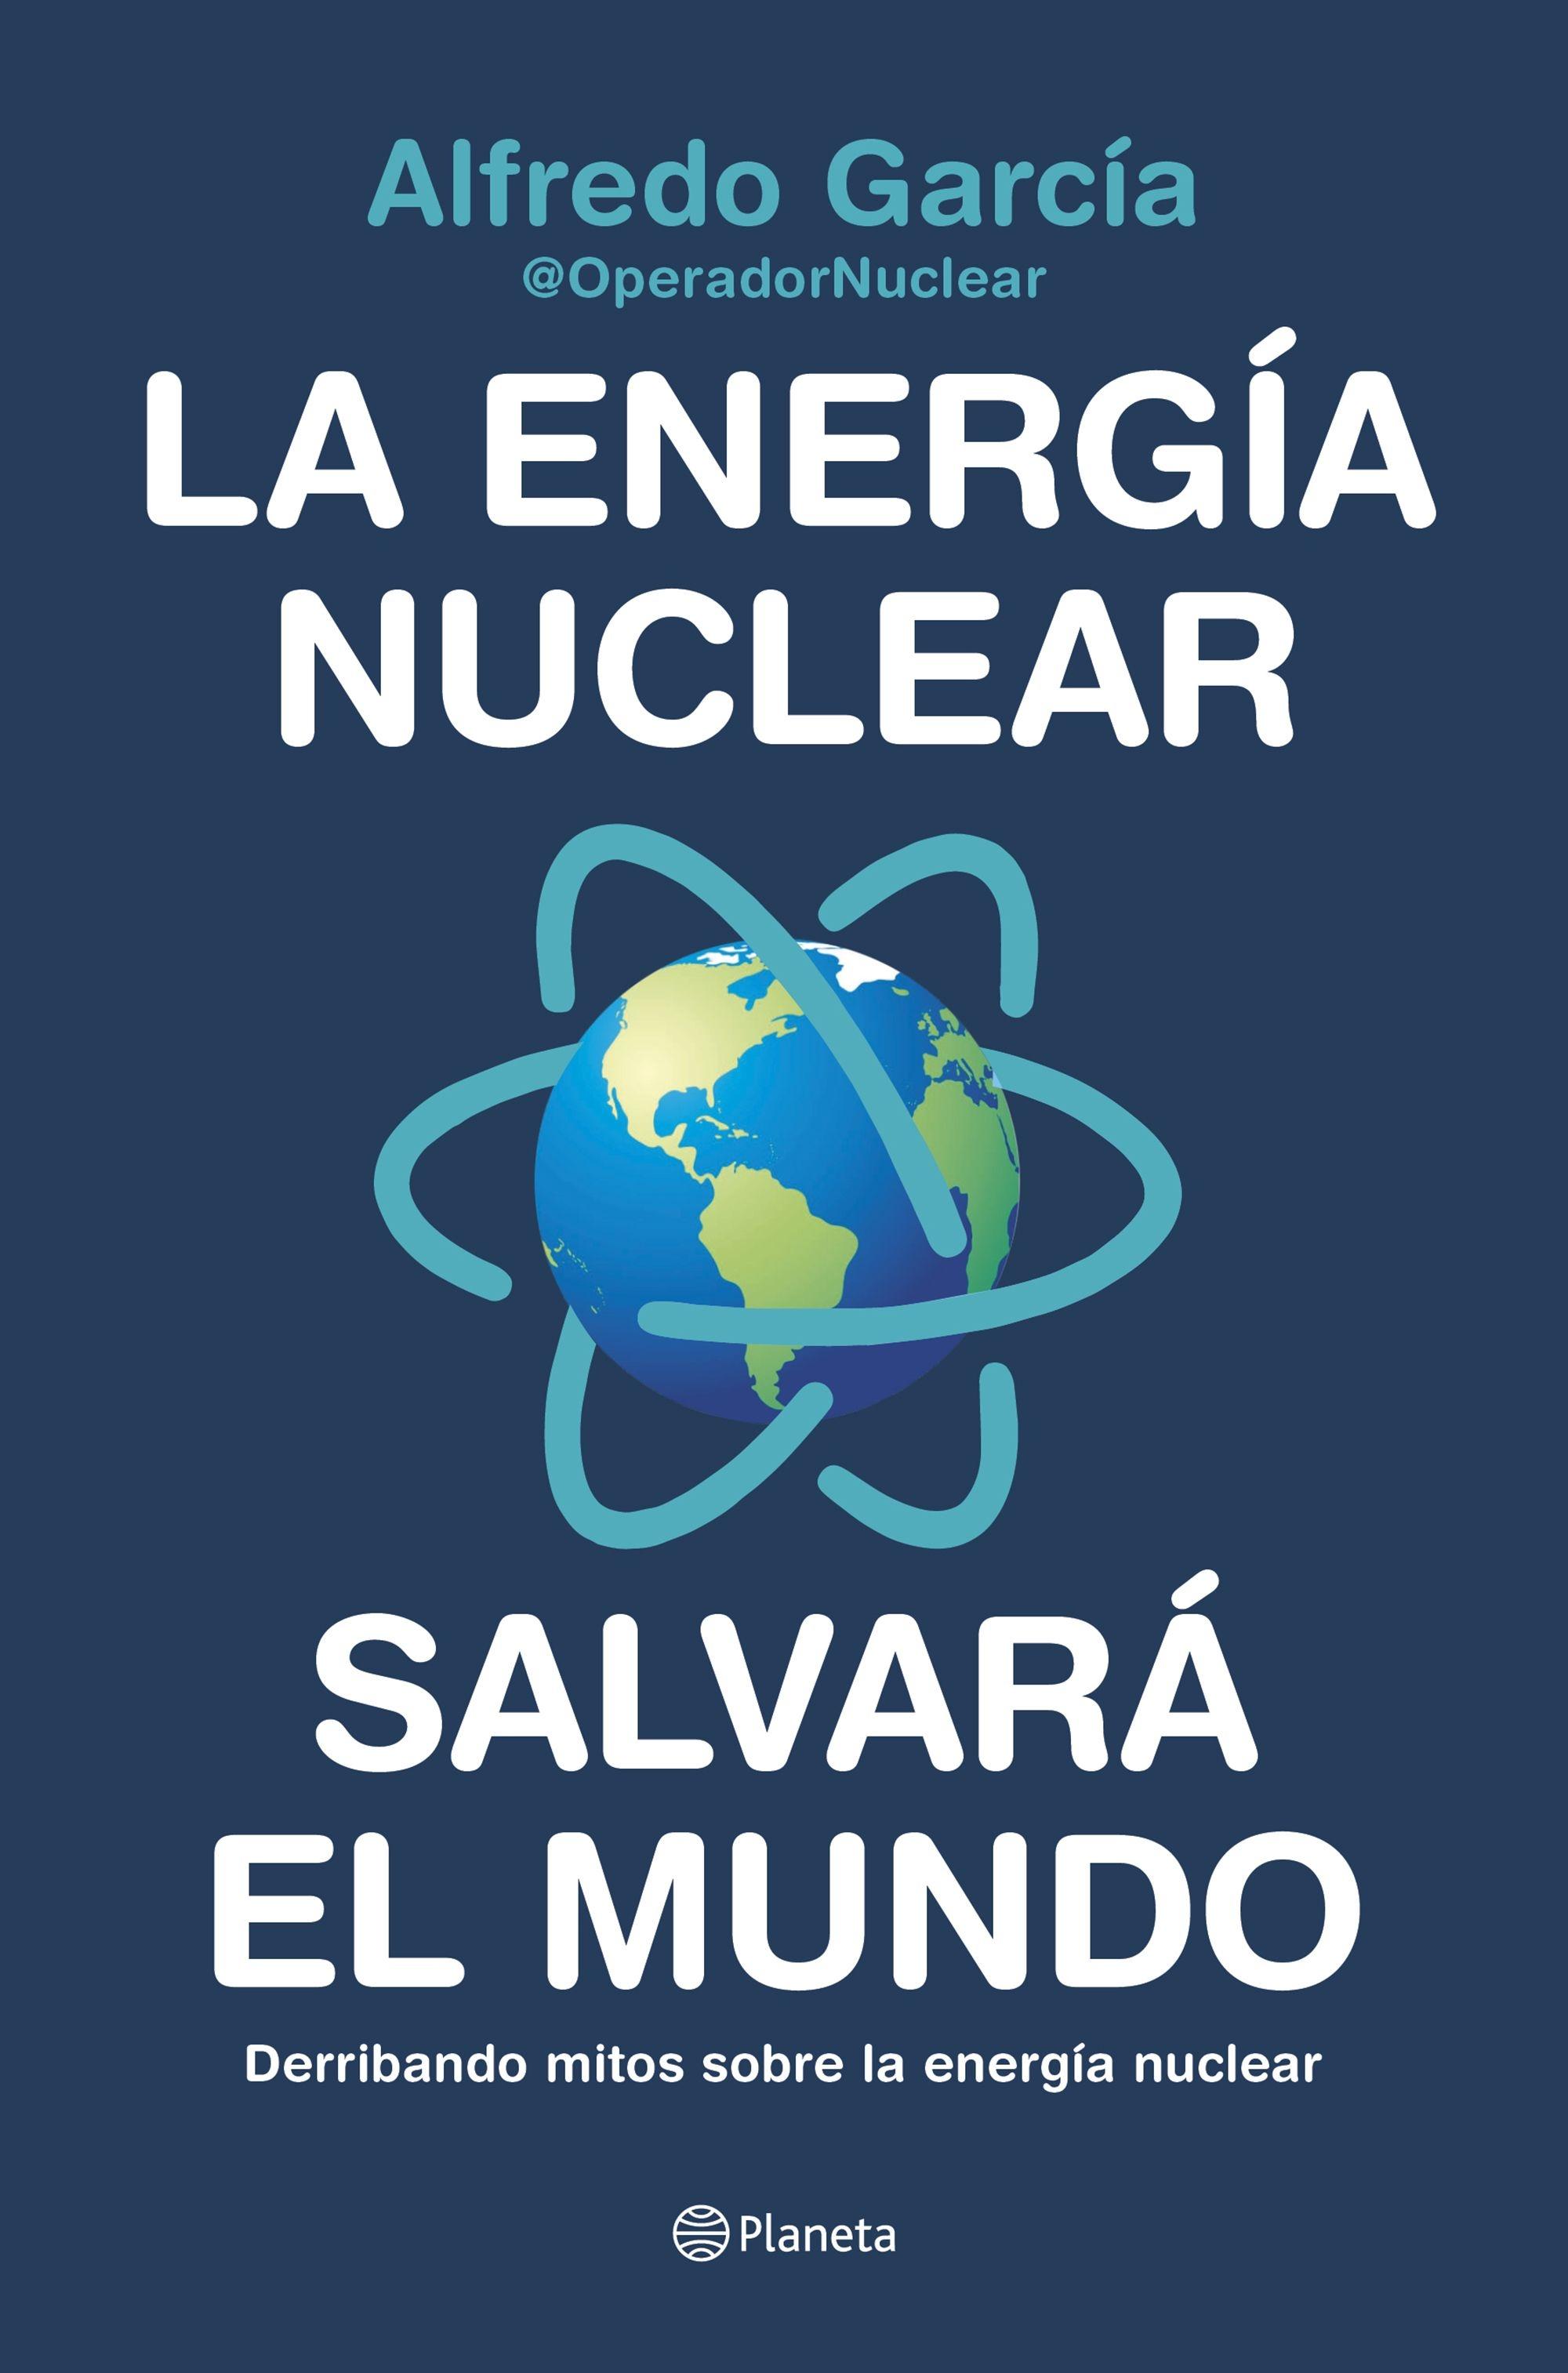 LA ENERGÍA NUCLEAR SALVARÁ EL MUNDO. "Derribando mitos sobre la energía nuclear"